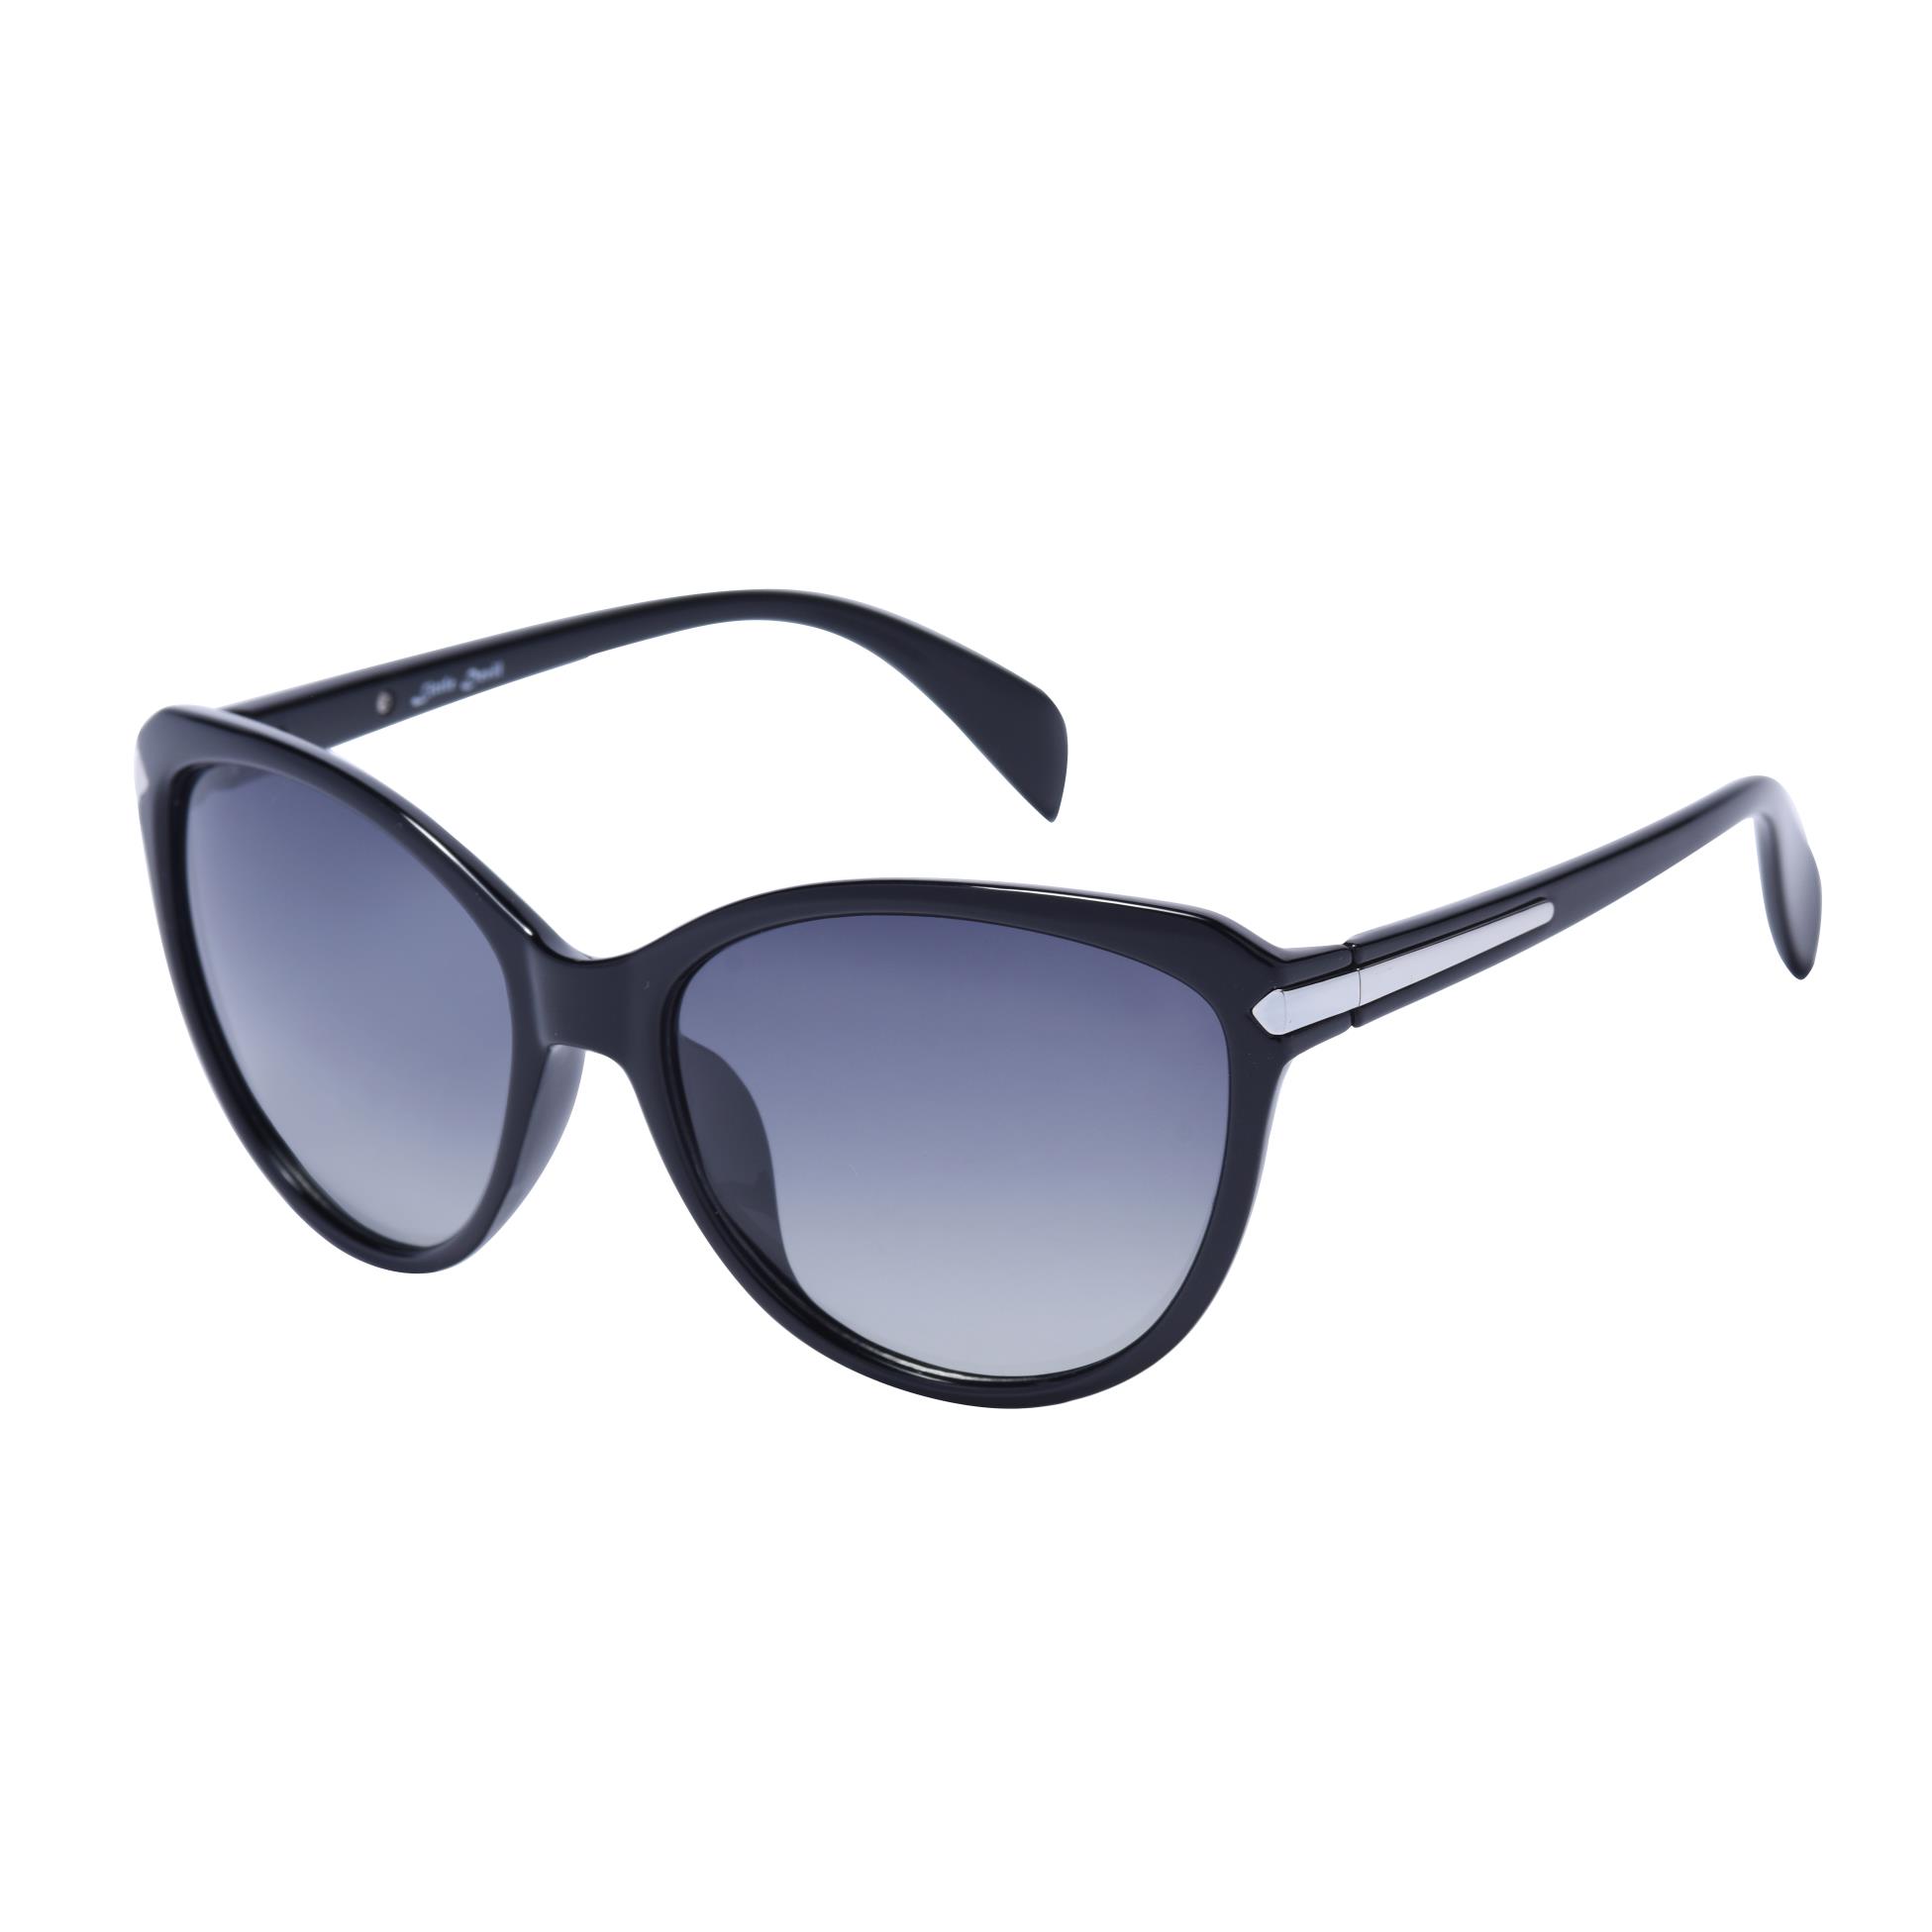 نظارات شمسية كاتي للسيدات موديل 5505